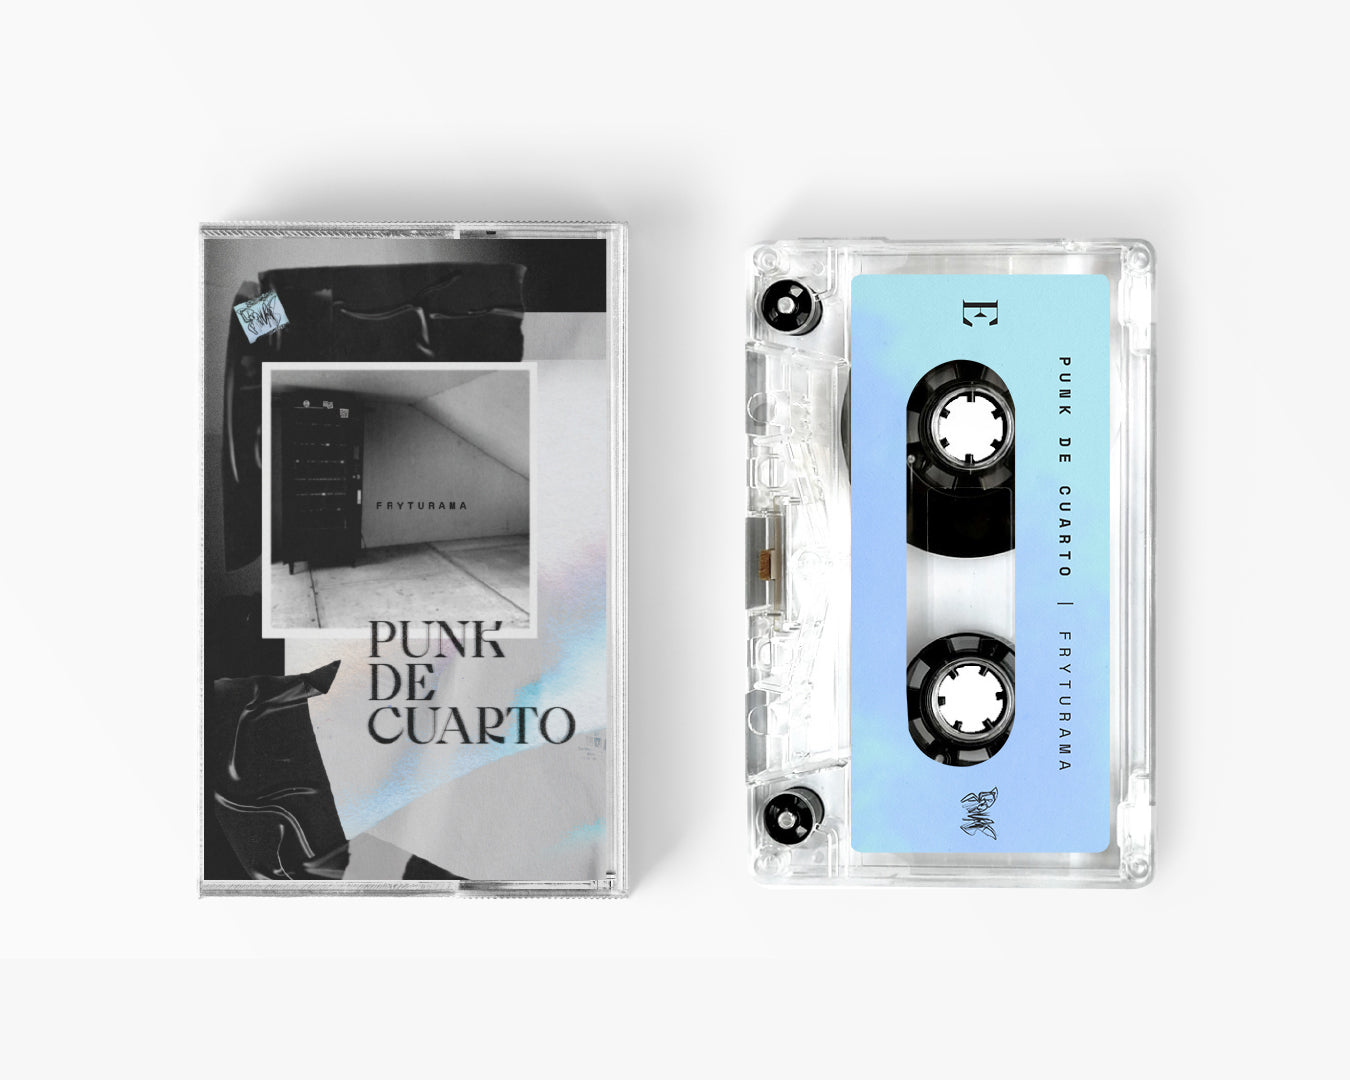 Cassette - Punk de cuarto - Fryturama